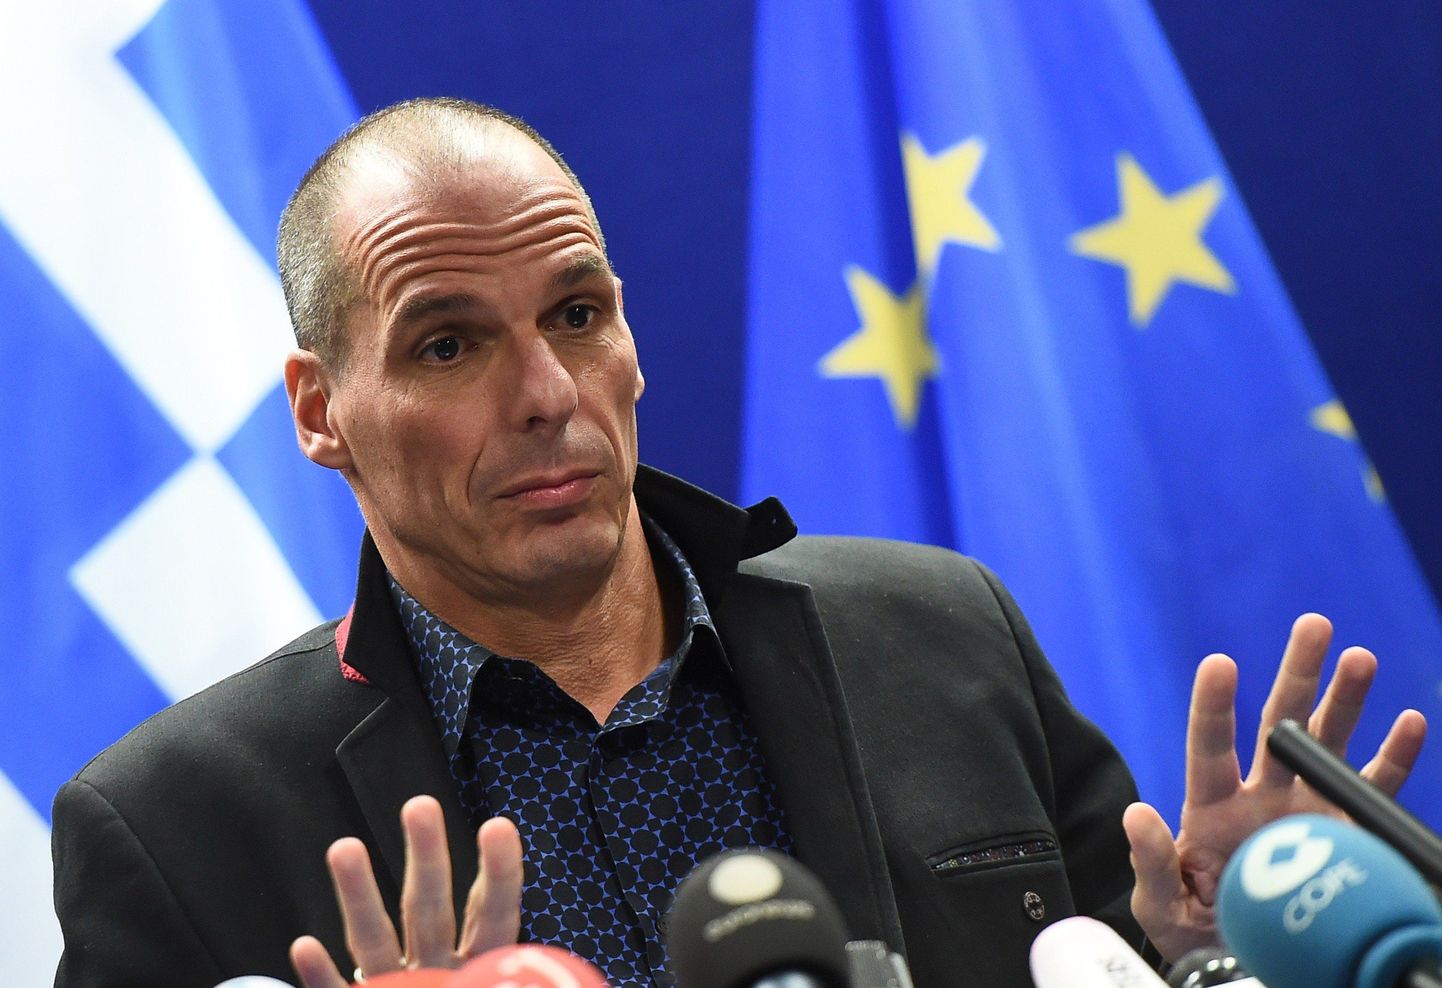 Kreeka rahandusminister Yanis Varoufakis pressikonverentsil pärast kohtumist eurogrupi liikmetega.